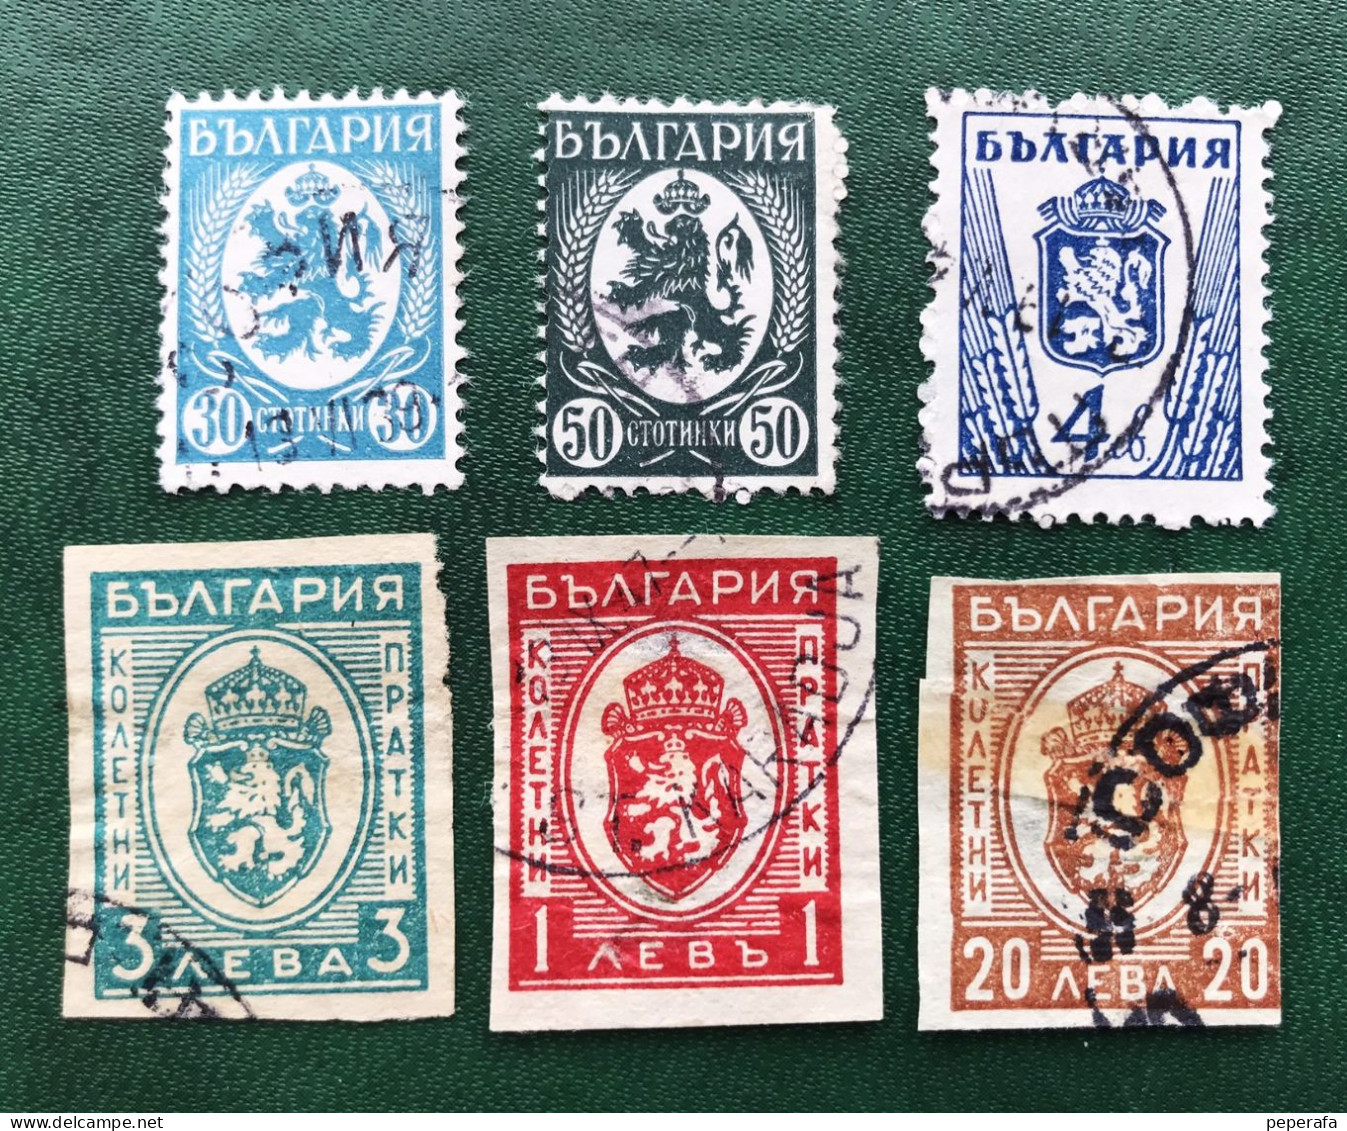 BULGARIA COLECCIÓN SELLOS CLÁSICOS (LOTE 2) - Used Stamps